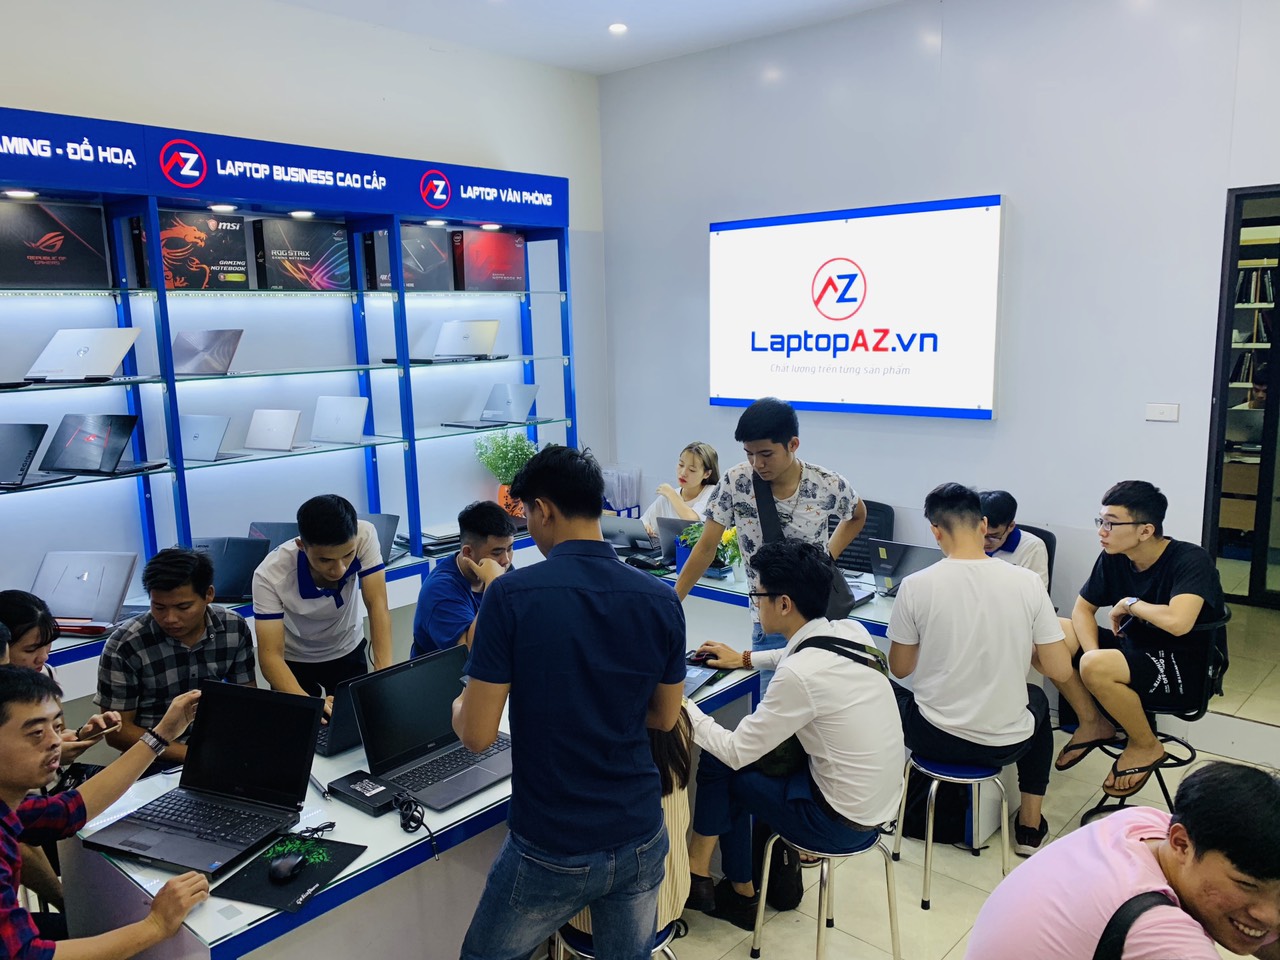 Laptopaz.vn - Thương Hiệu Mua Bán Laptop Uy Tín Hàng Đầu Việt Nam ảnh 1